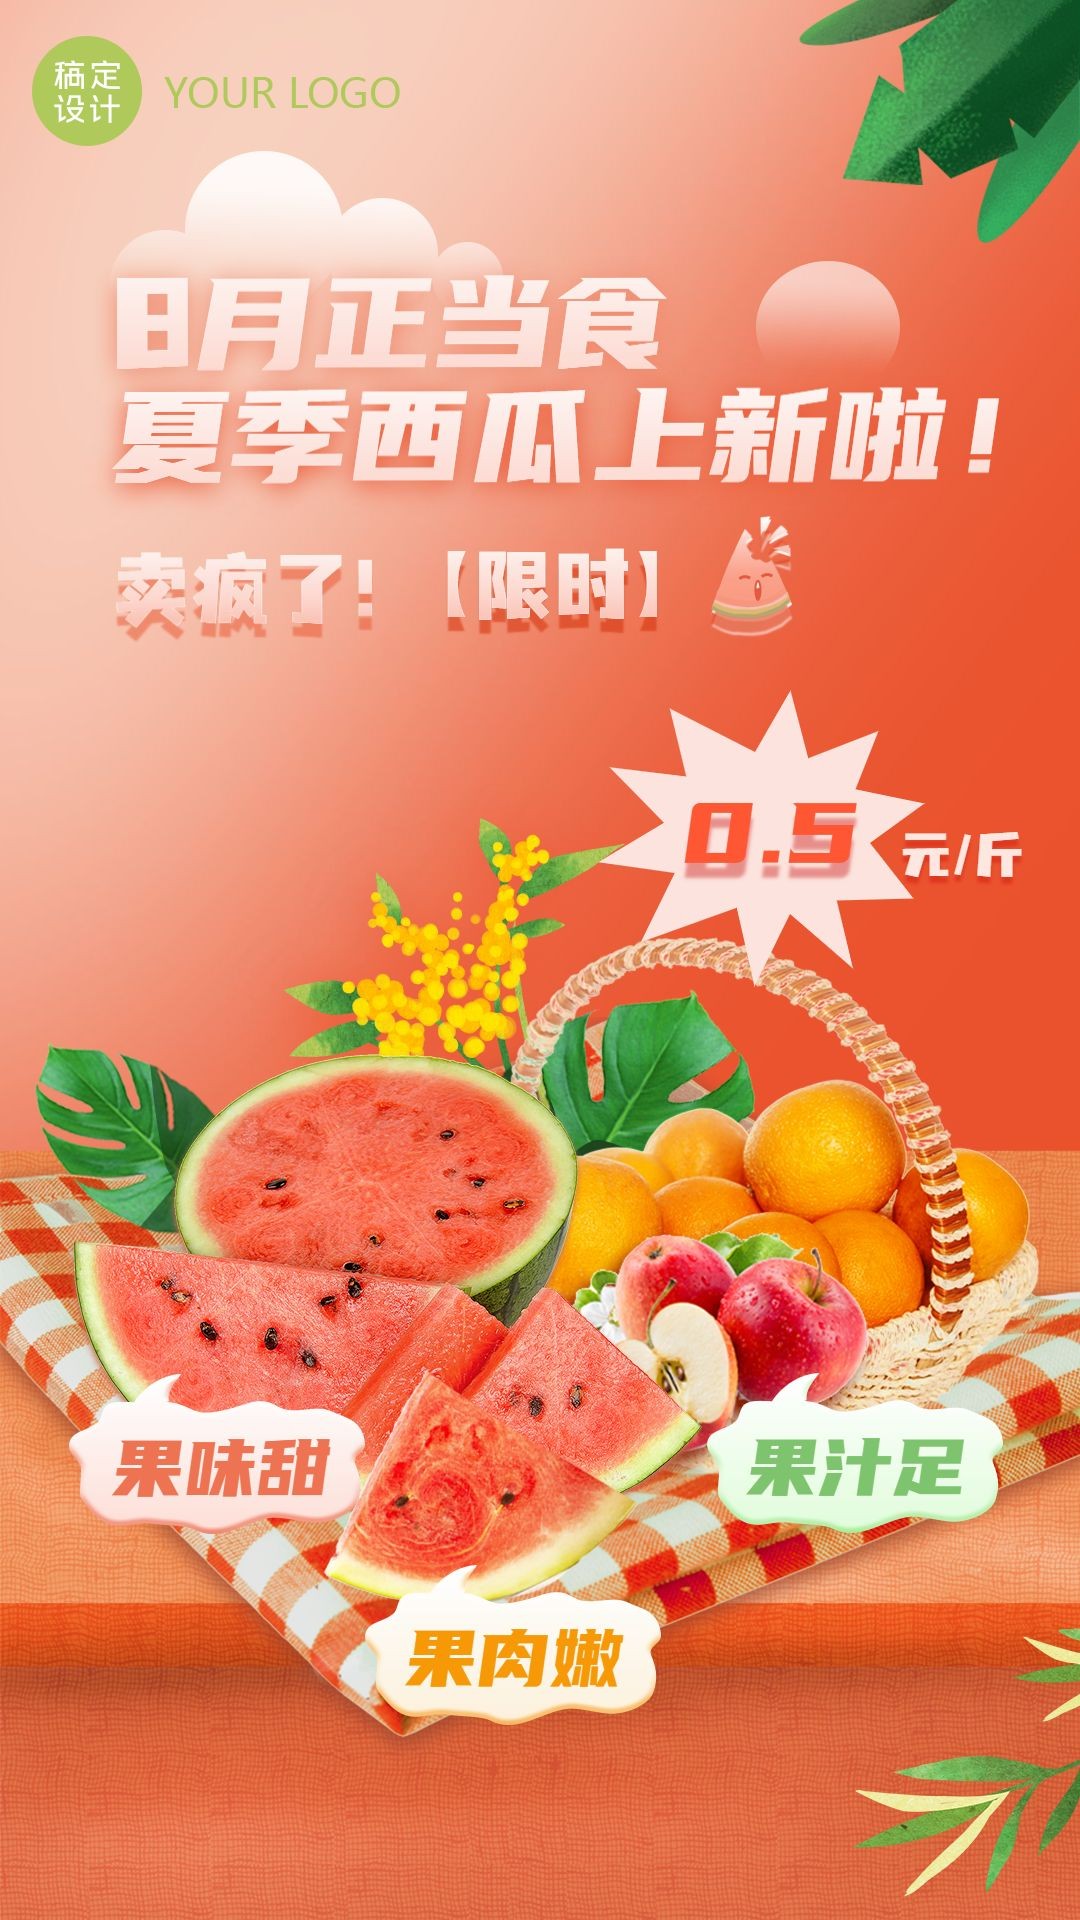 水果生鲜夏季营销新品展示实景竖屏海报预览效果